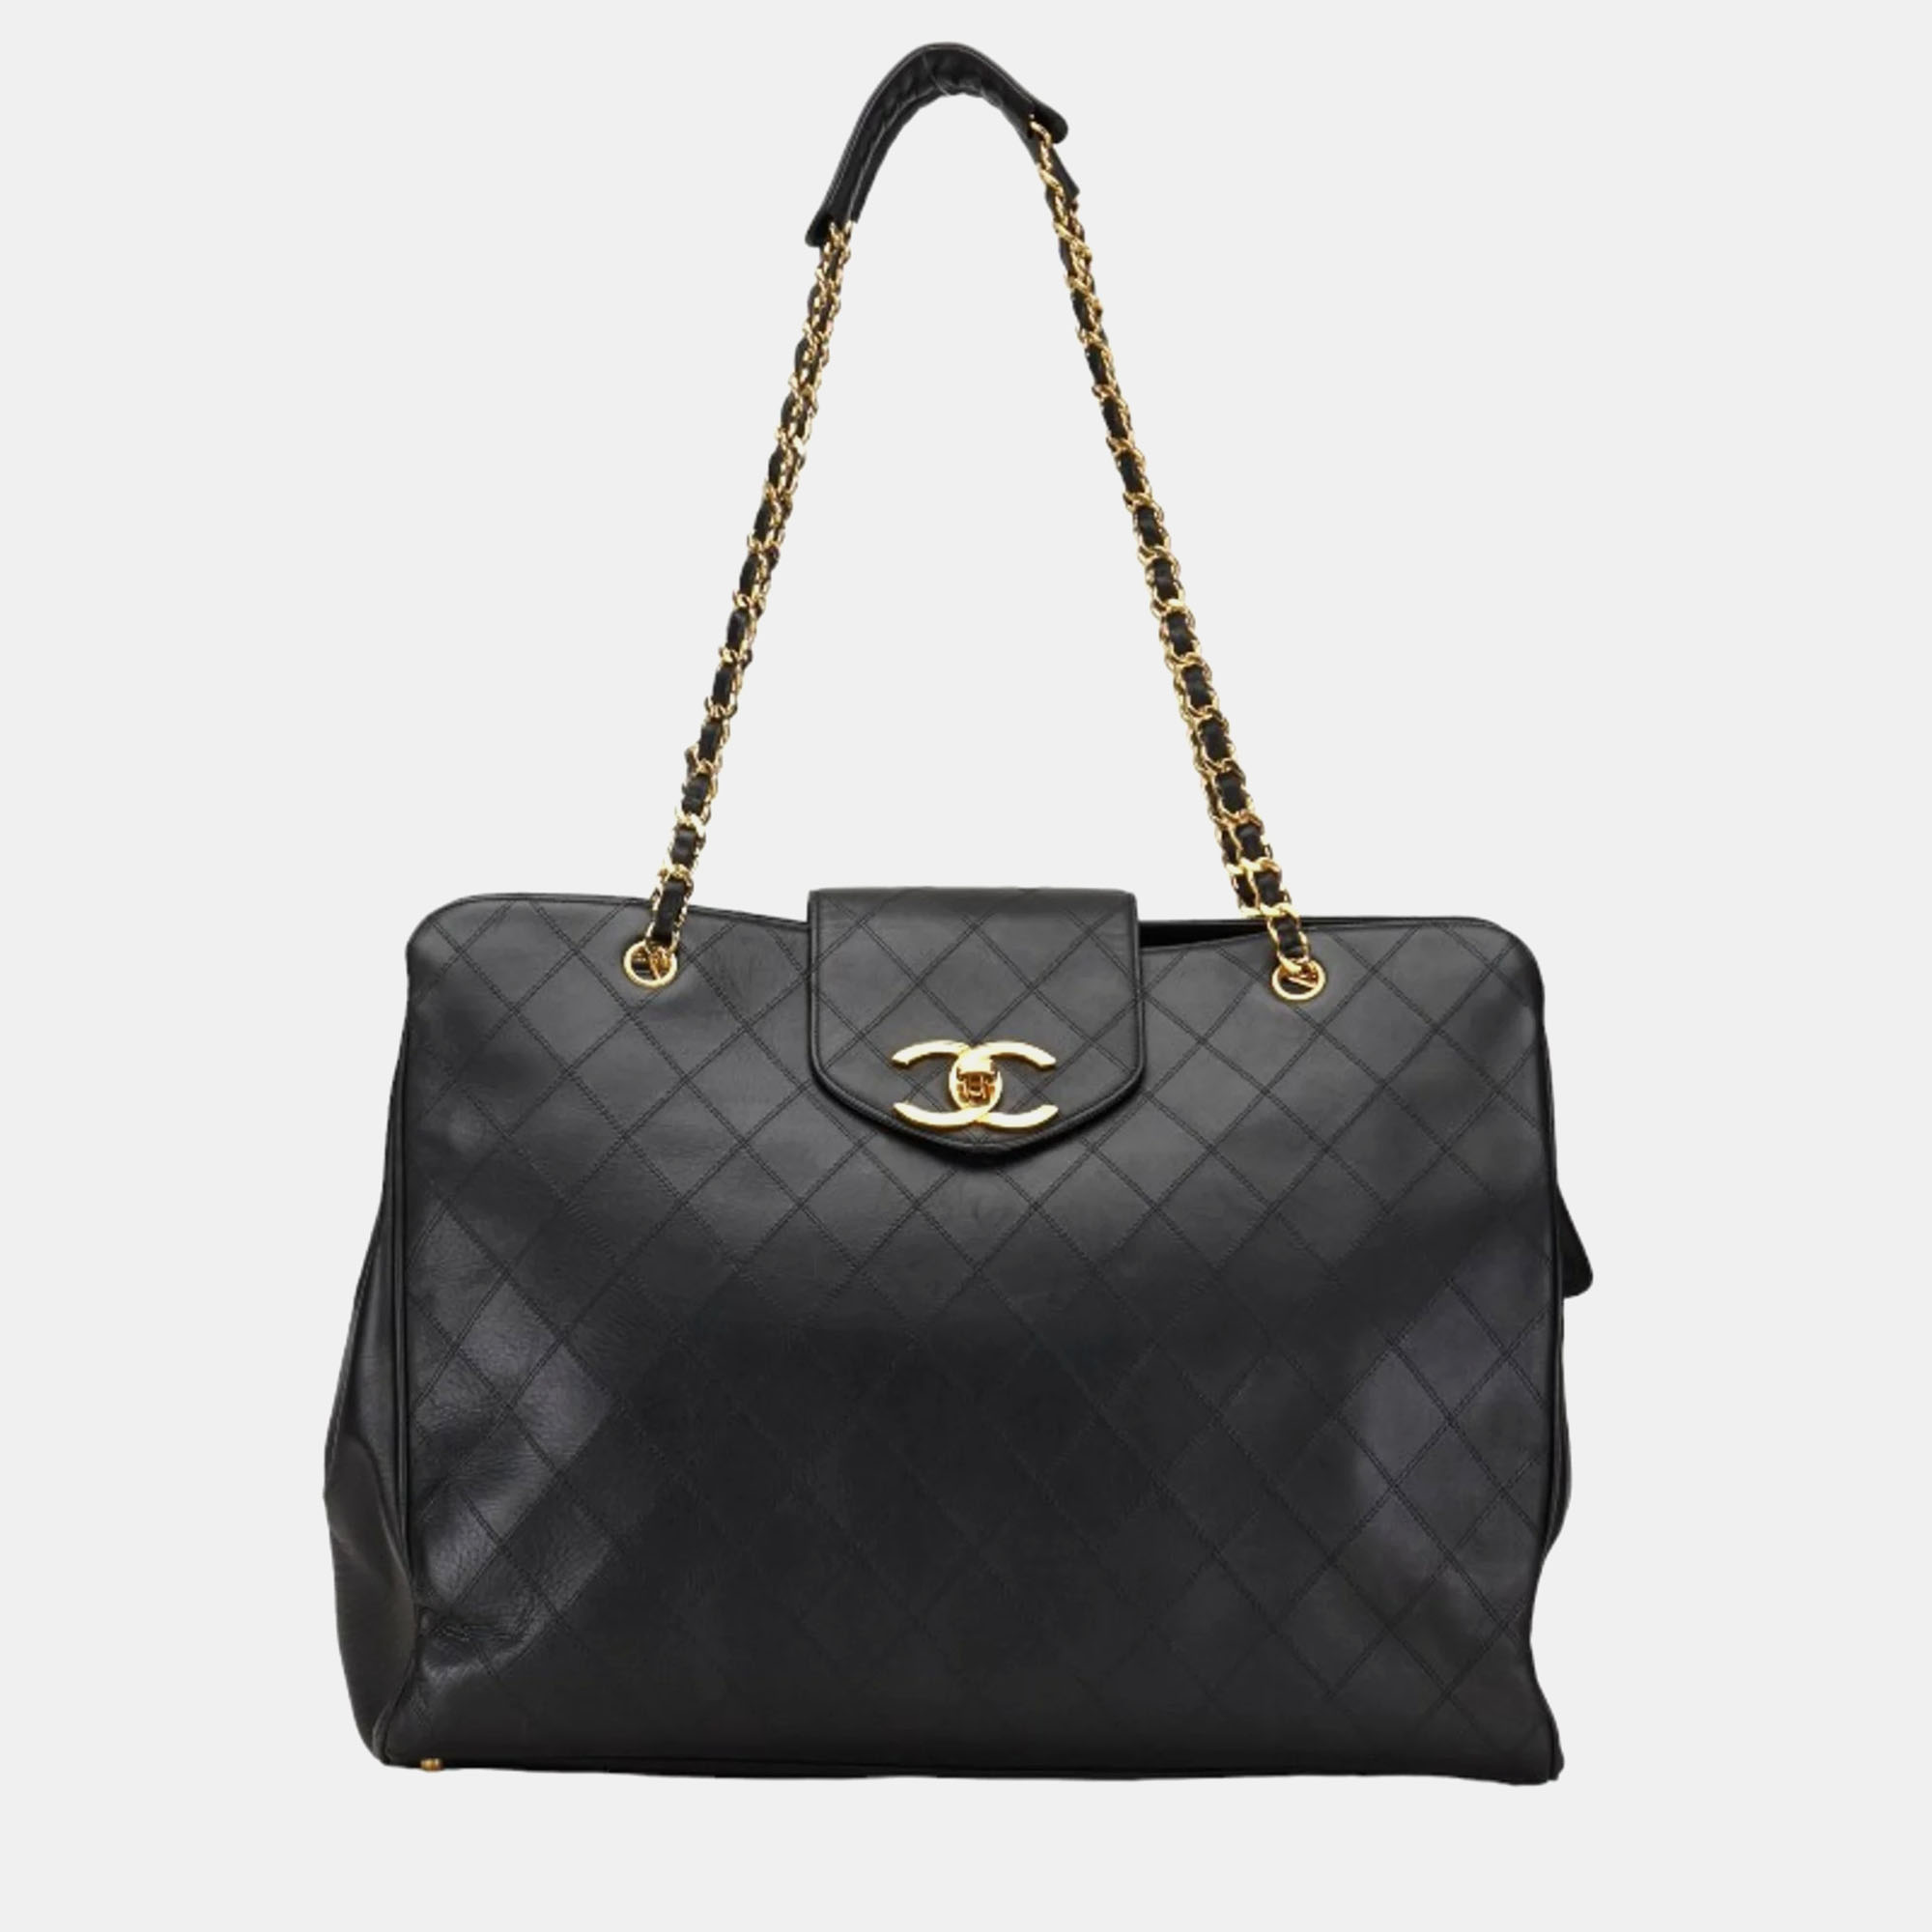 Chanel black leather extra large supermodel weekender travel flap shoulder bag